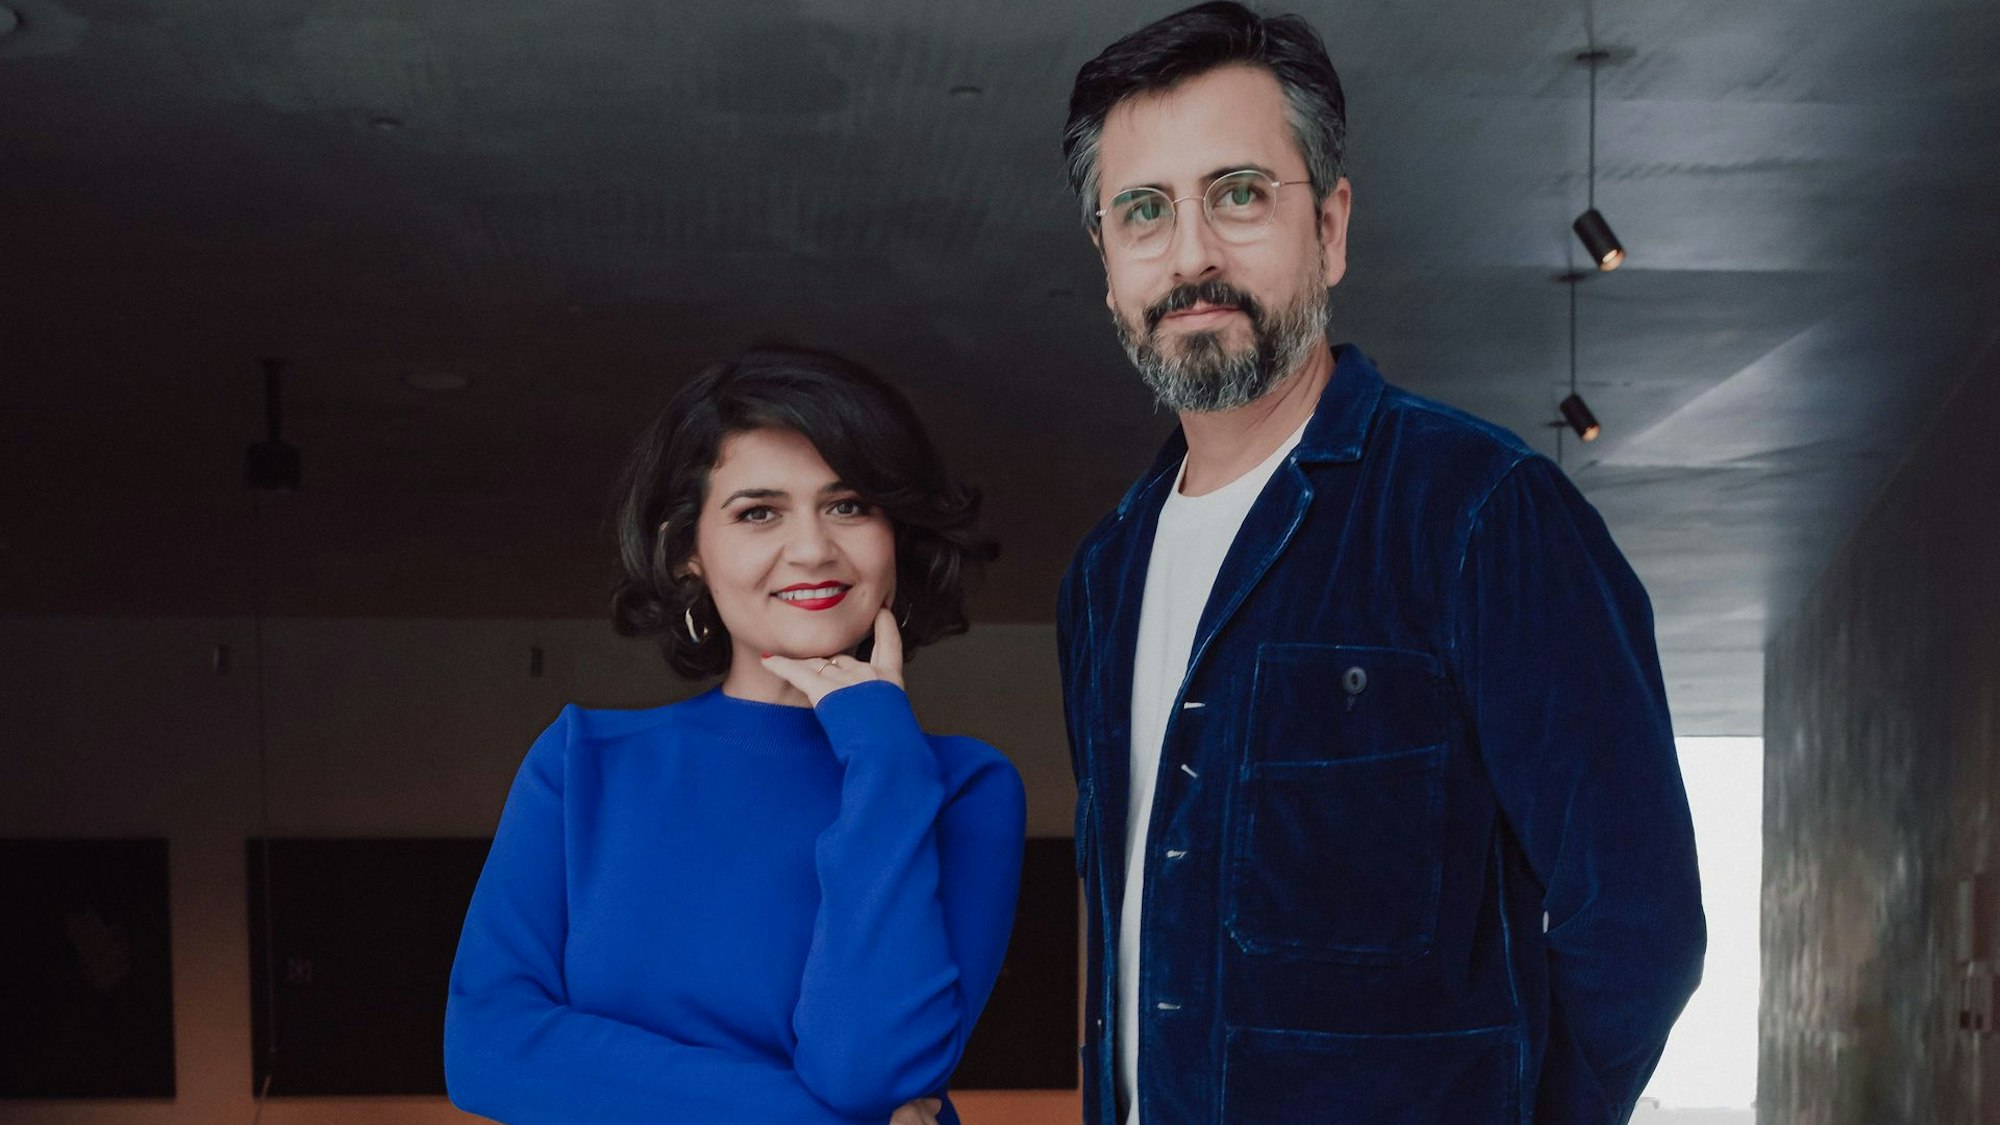 Pınar Karabulut und Rafael Sanchez blicken in die Kamera. Sie trägt einen blauen Pullover, er ein blaues Hemd.